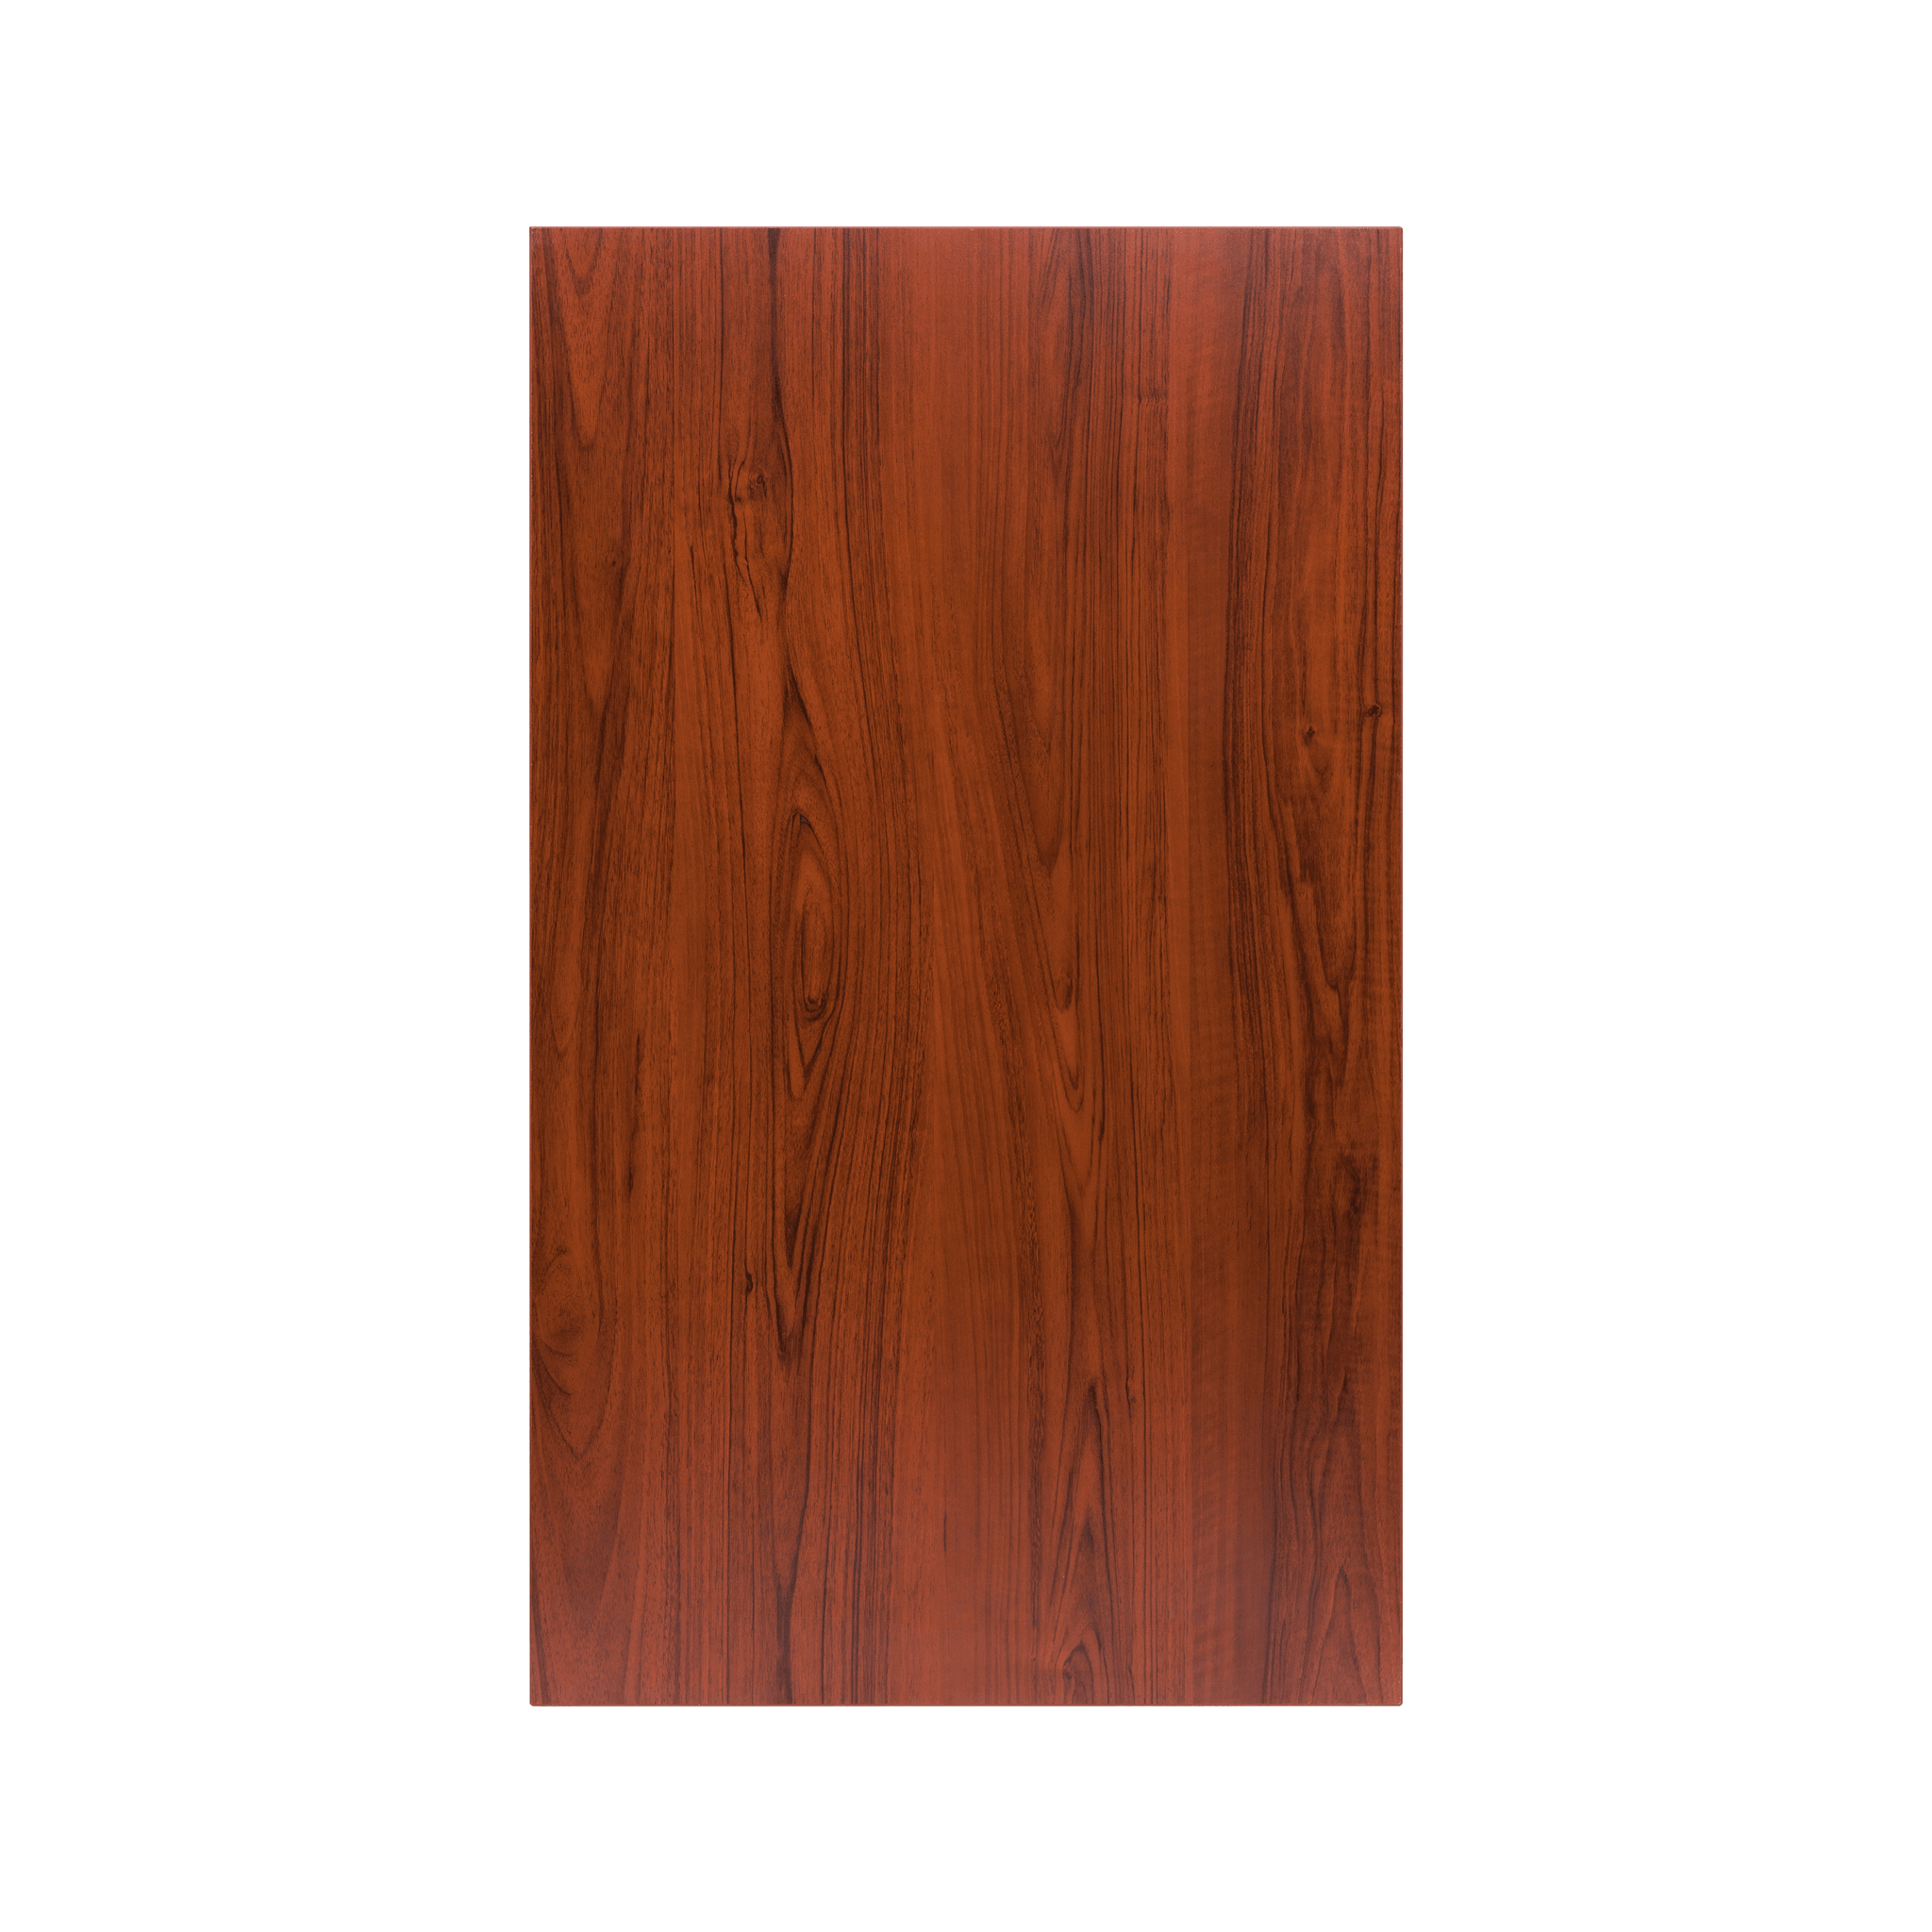 Mặt bàn gỗ công nghiệp E1 Grade - HyperWork